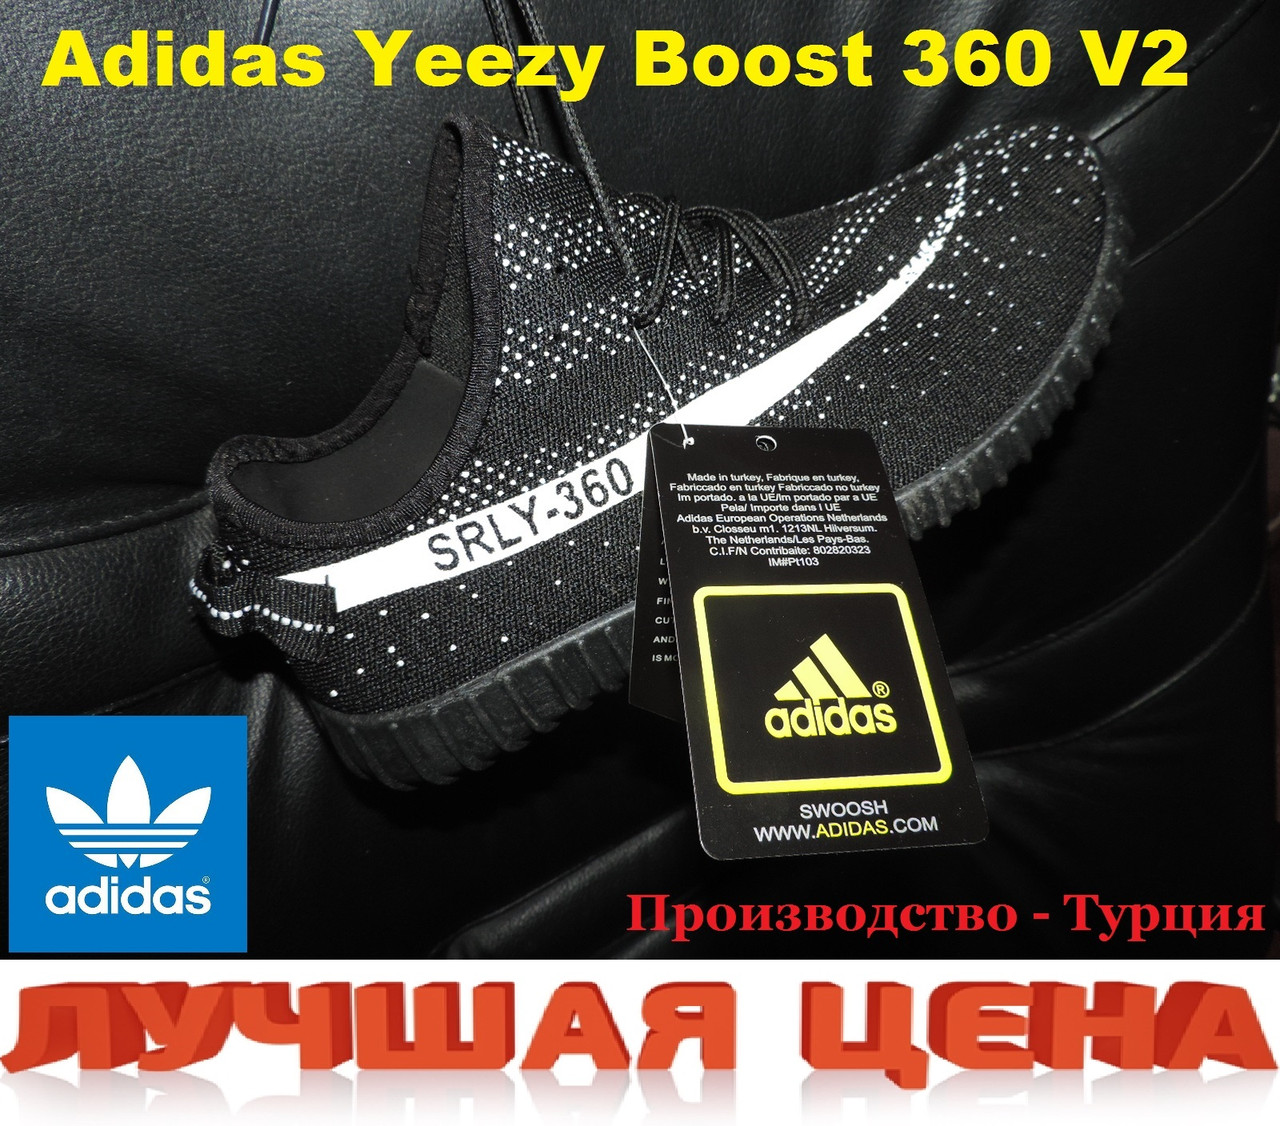 adidas yeezy boost 360 v2